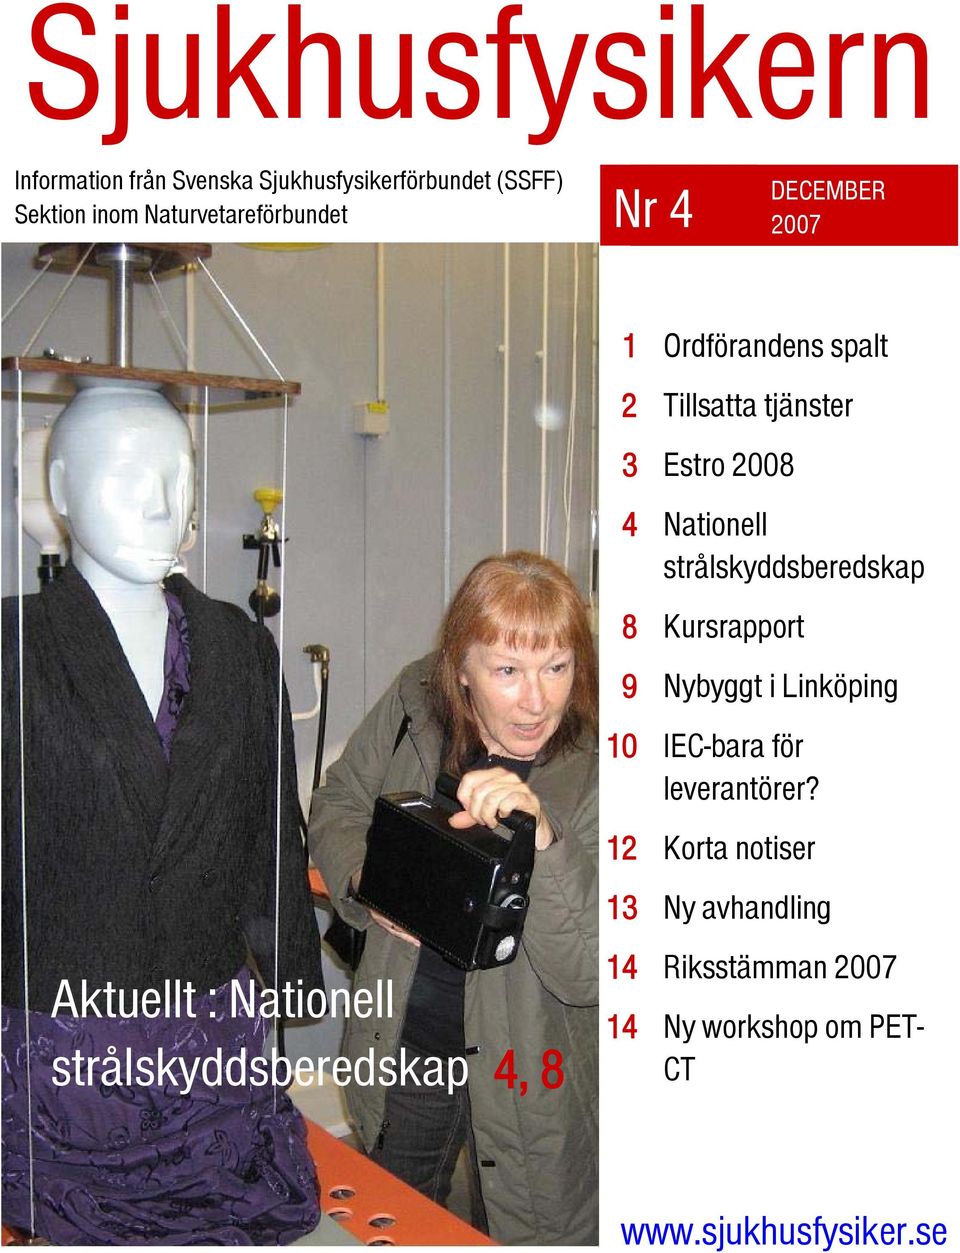 spalt Tillsatta tjänster Estro 2008 Nationell strålskyddsberedskap Kursrapport Nybyggt i Linköping